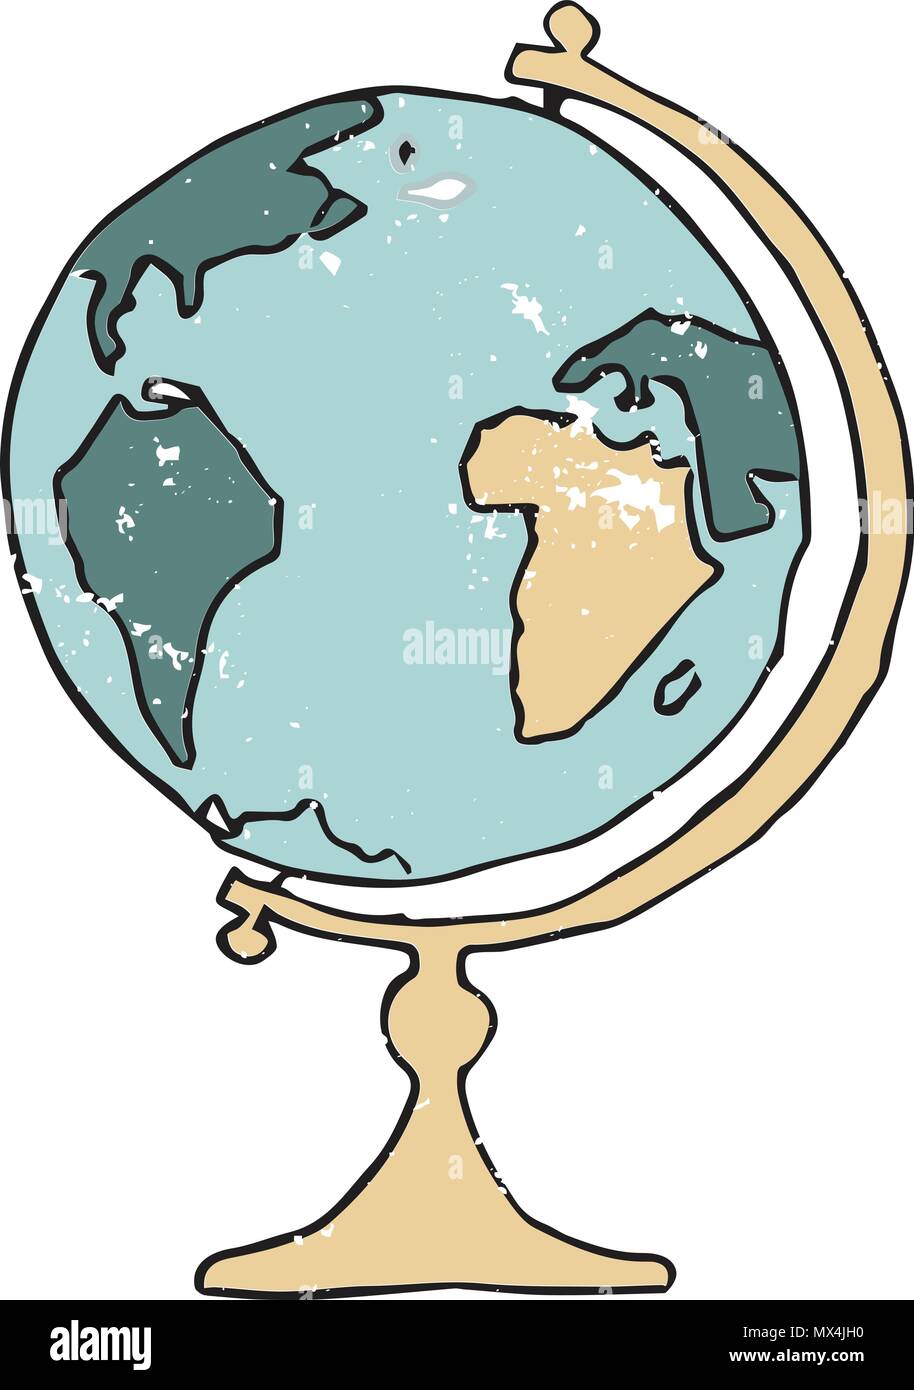 Globus Vector Illustration Zeichnung vintage Farbe weltkarten grün gelb Kartograph geometrischen Schule inventoryl Globe Education auf Weiß zurück Stock Vektor